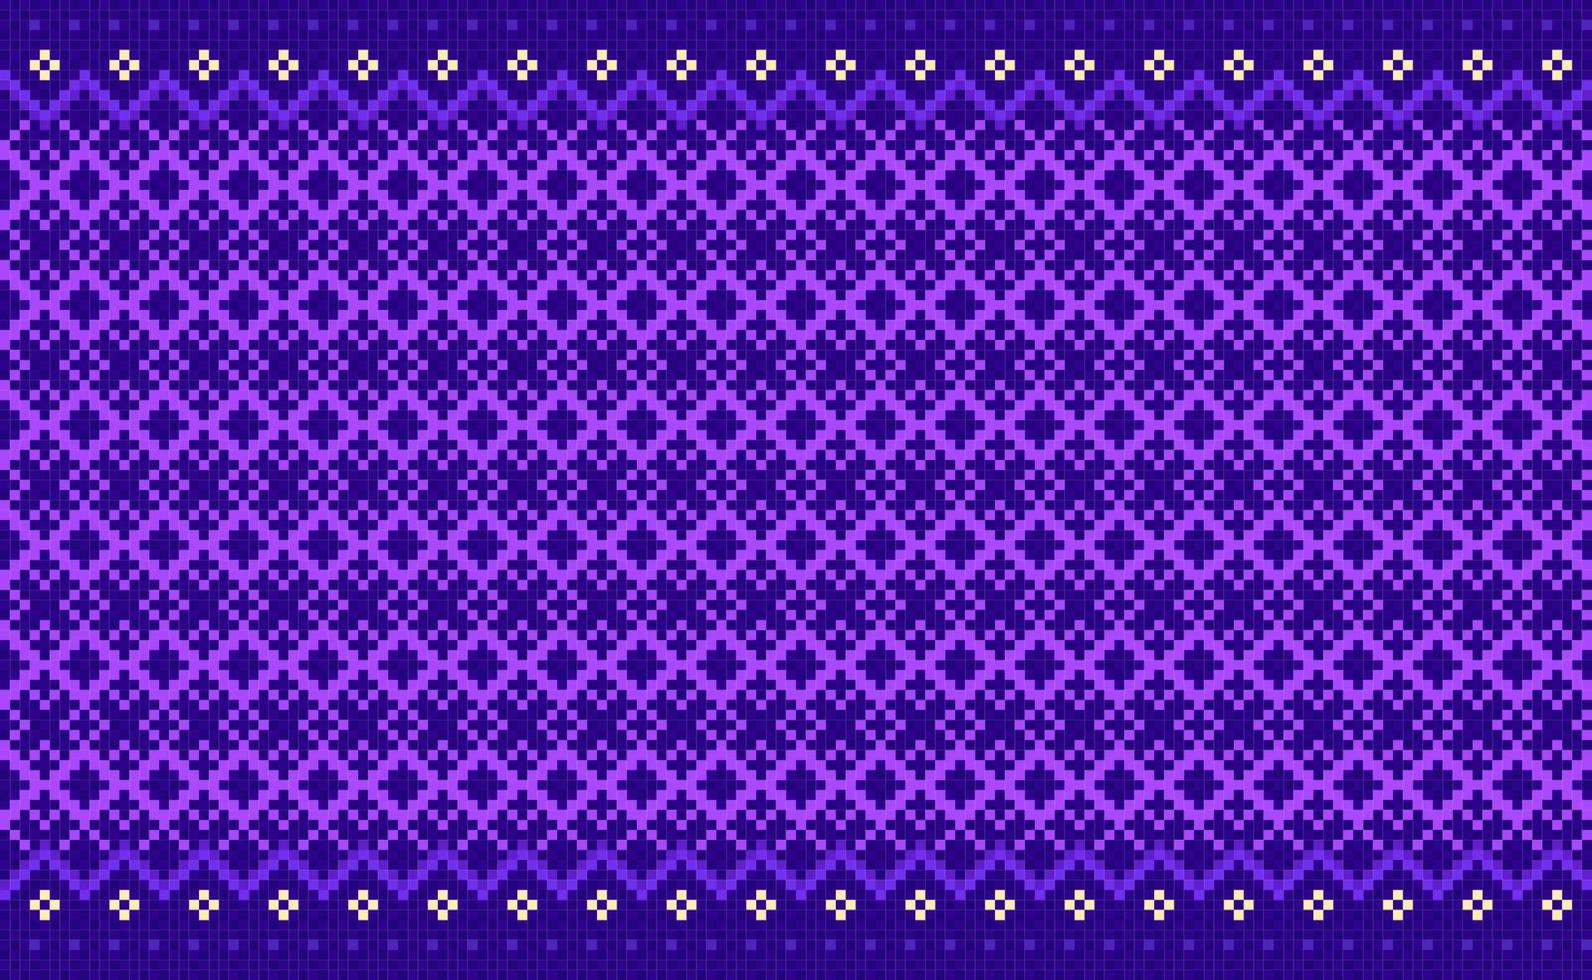 patrón étnico de bordado, fondo de ornamento geométrico vectorial, estilo de triángulo repetitivo de punto cruzado, patrón púrpura geométrico continuo, diseño para textiles, tela, arte, baldosas, mantas vector